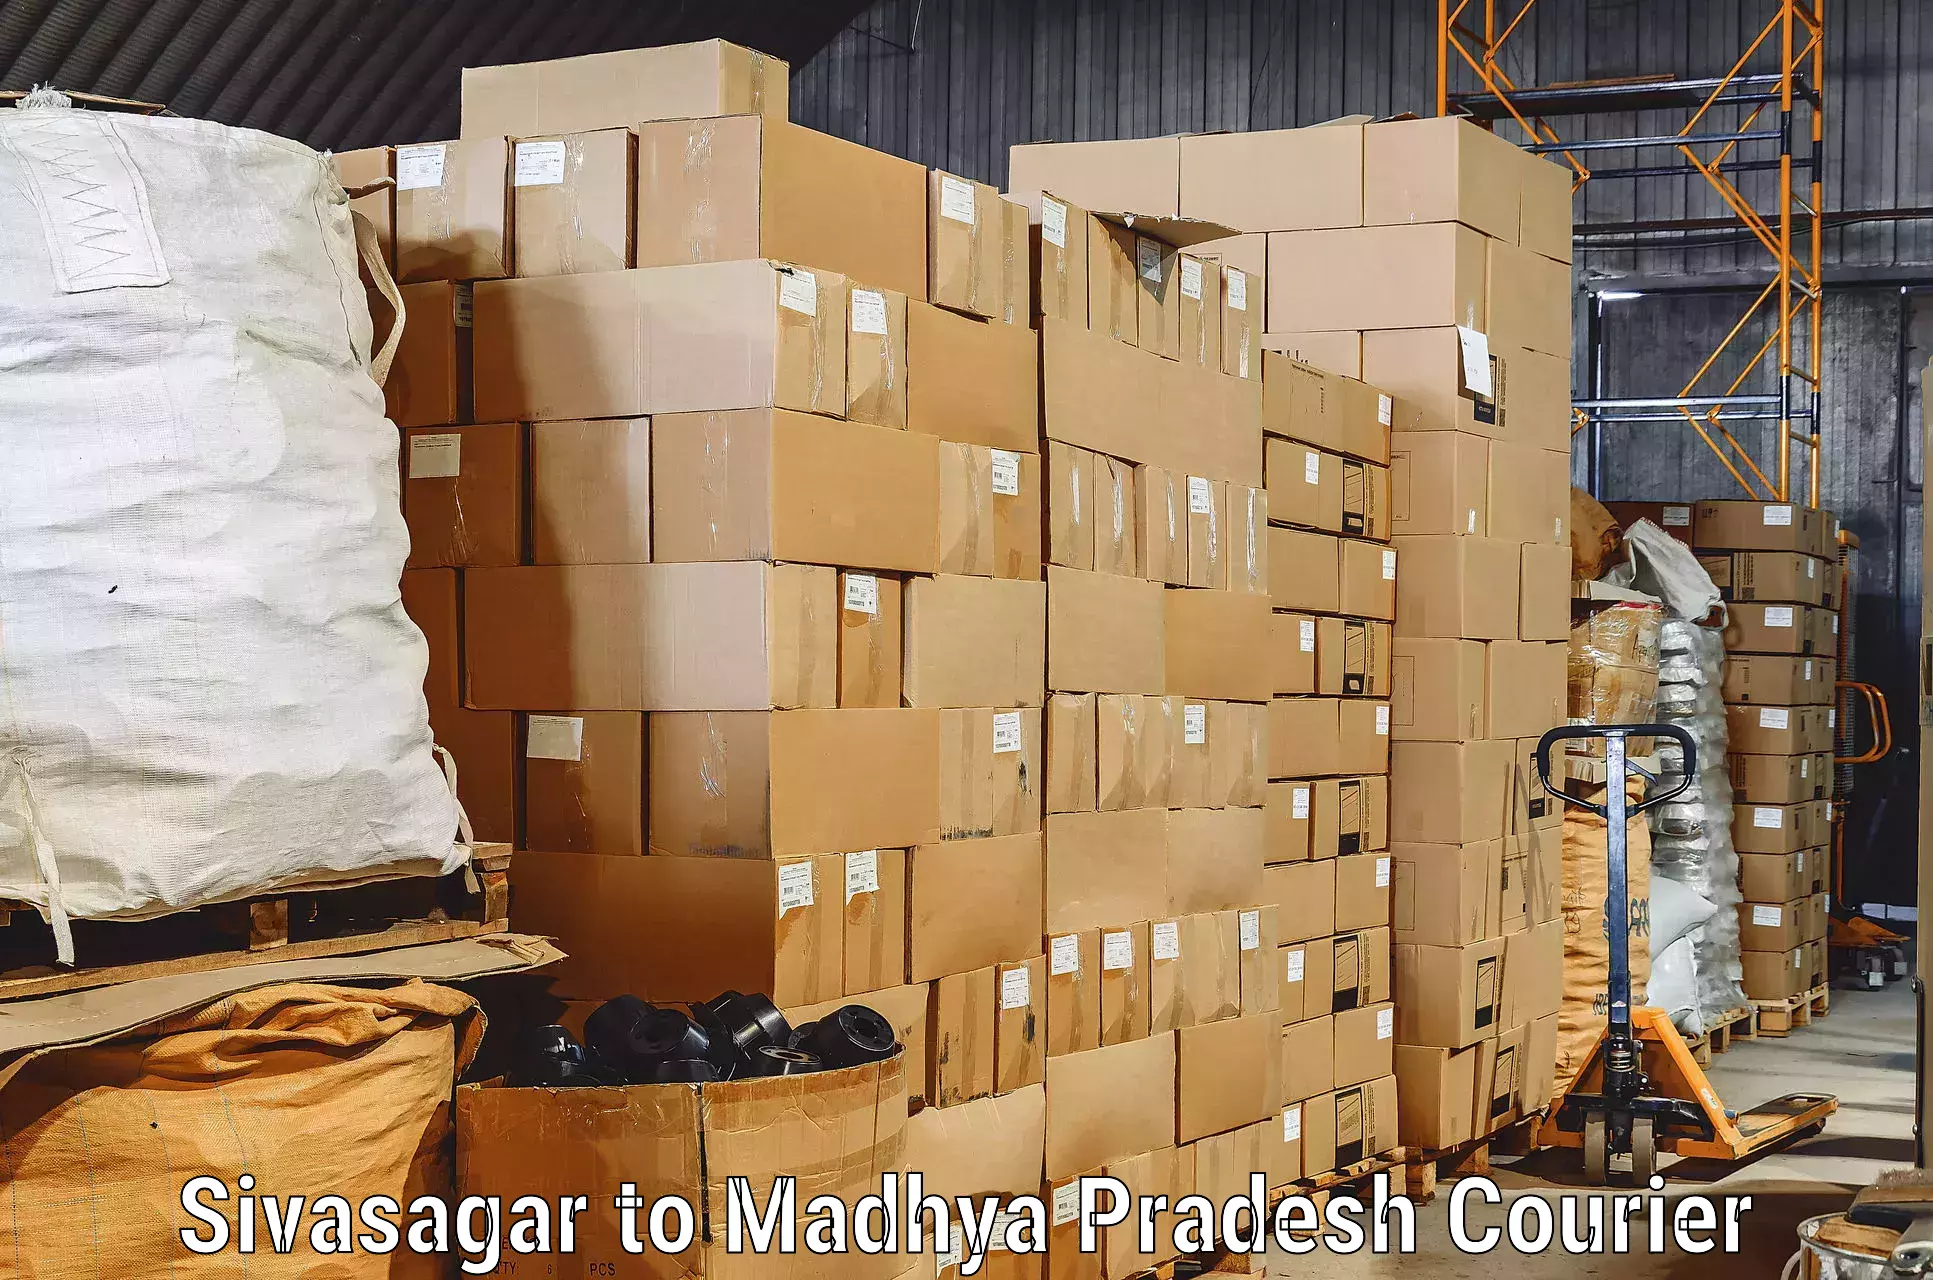 Reliable movers Sivasagar to Raghogarh